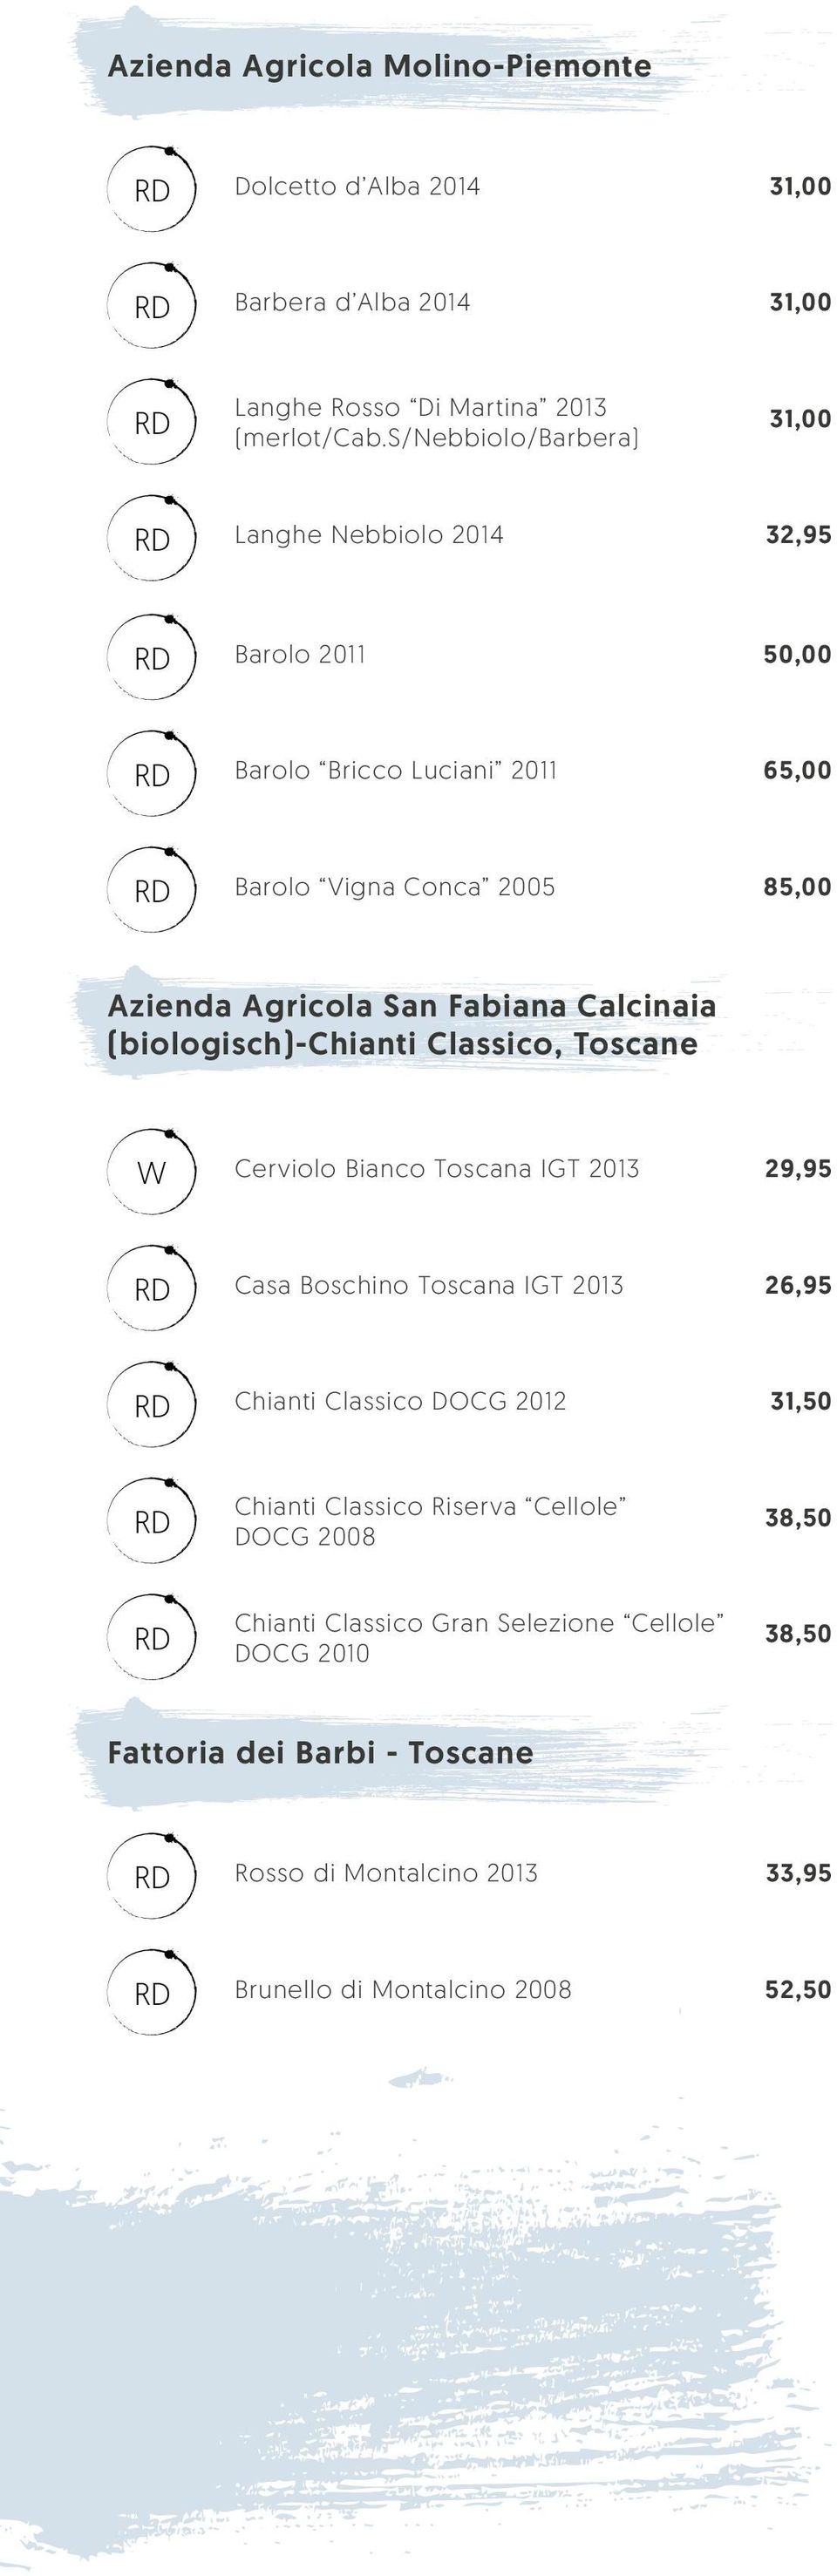 Fabiana Calcinaia (biologisch)-chianti Classico, Toscane Cerviolo Bianco Toscana IGT 2013 29,95 Casa Boschino Toscana IGT 2013 26,95 Chianti Classico DOCG 2012